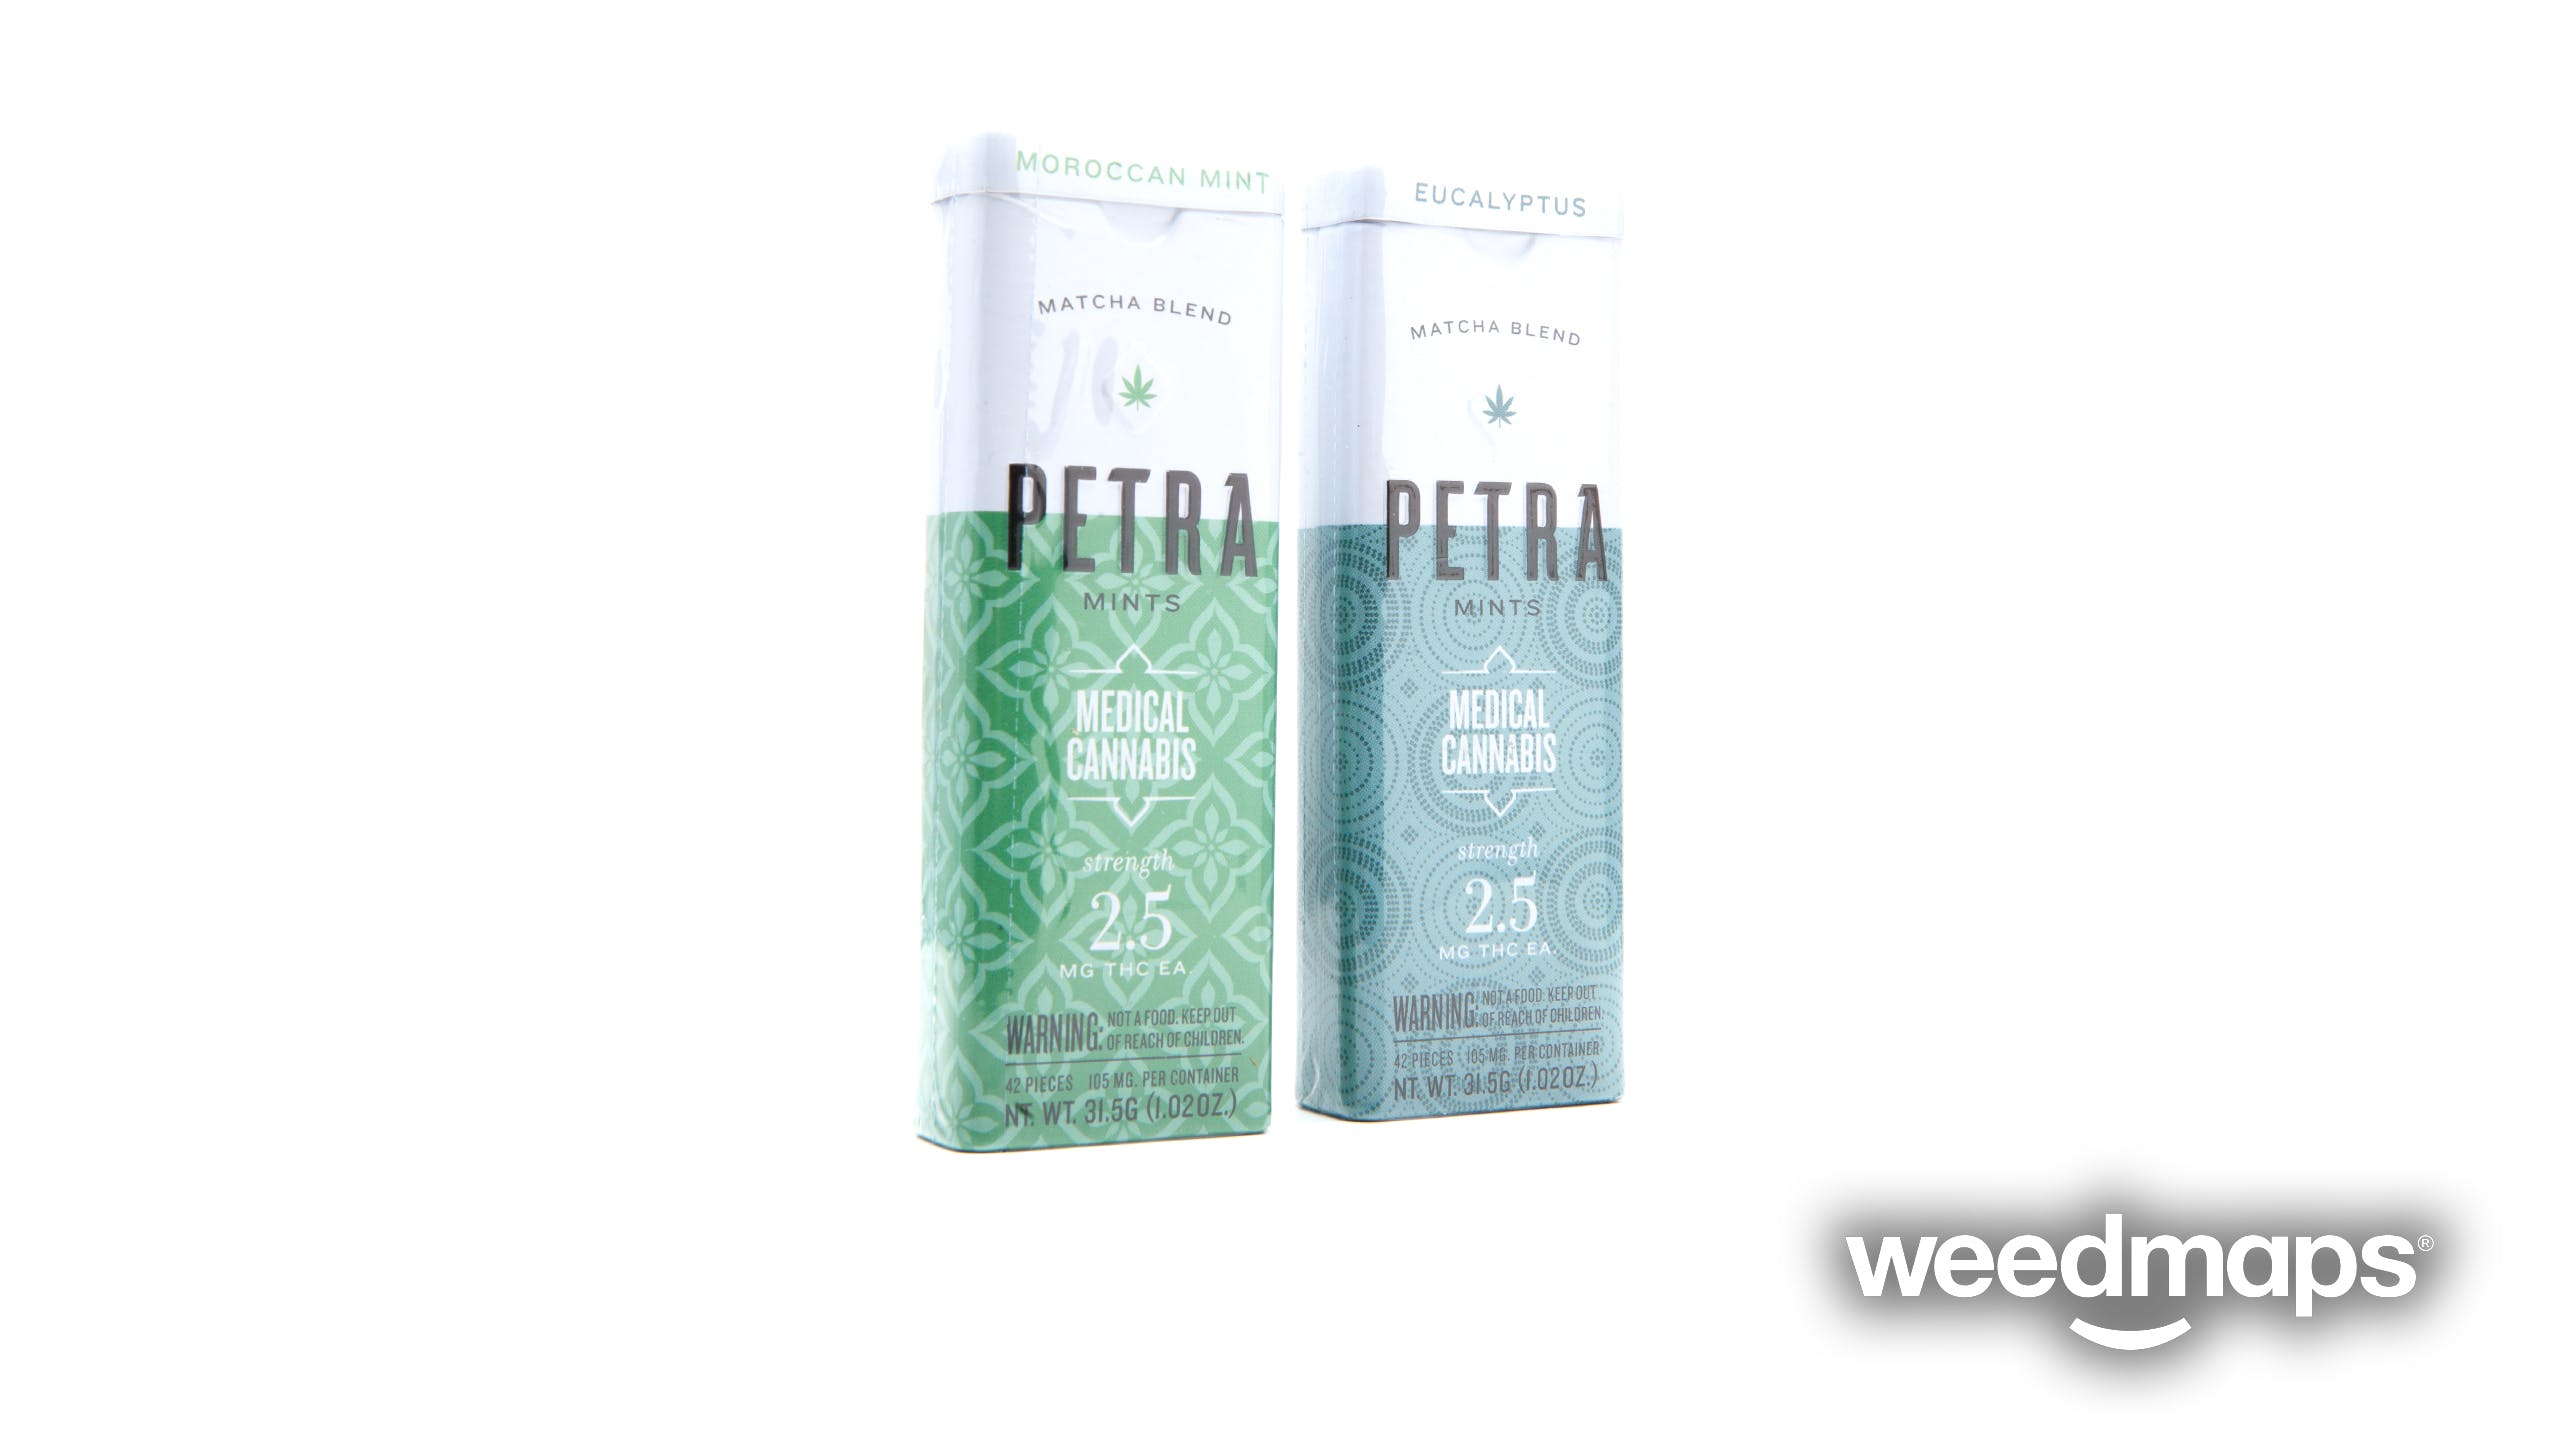 edible-petra-mints-kiva-confections